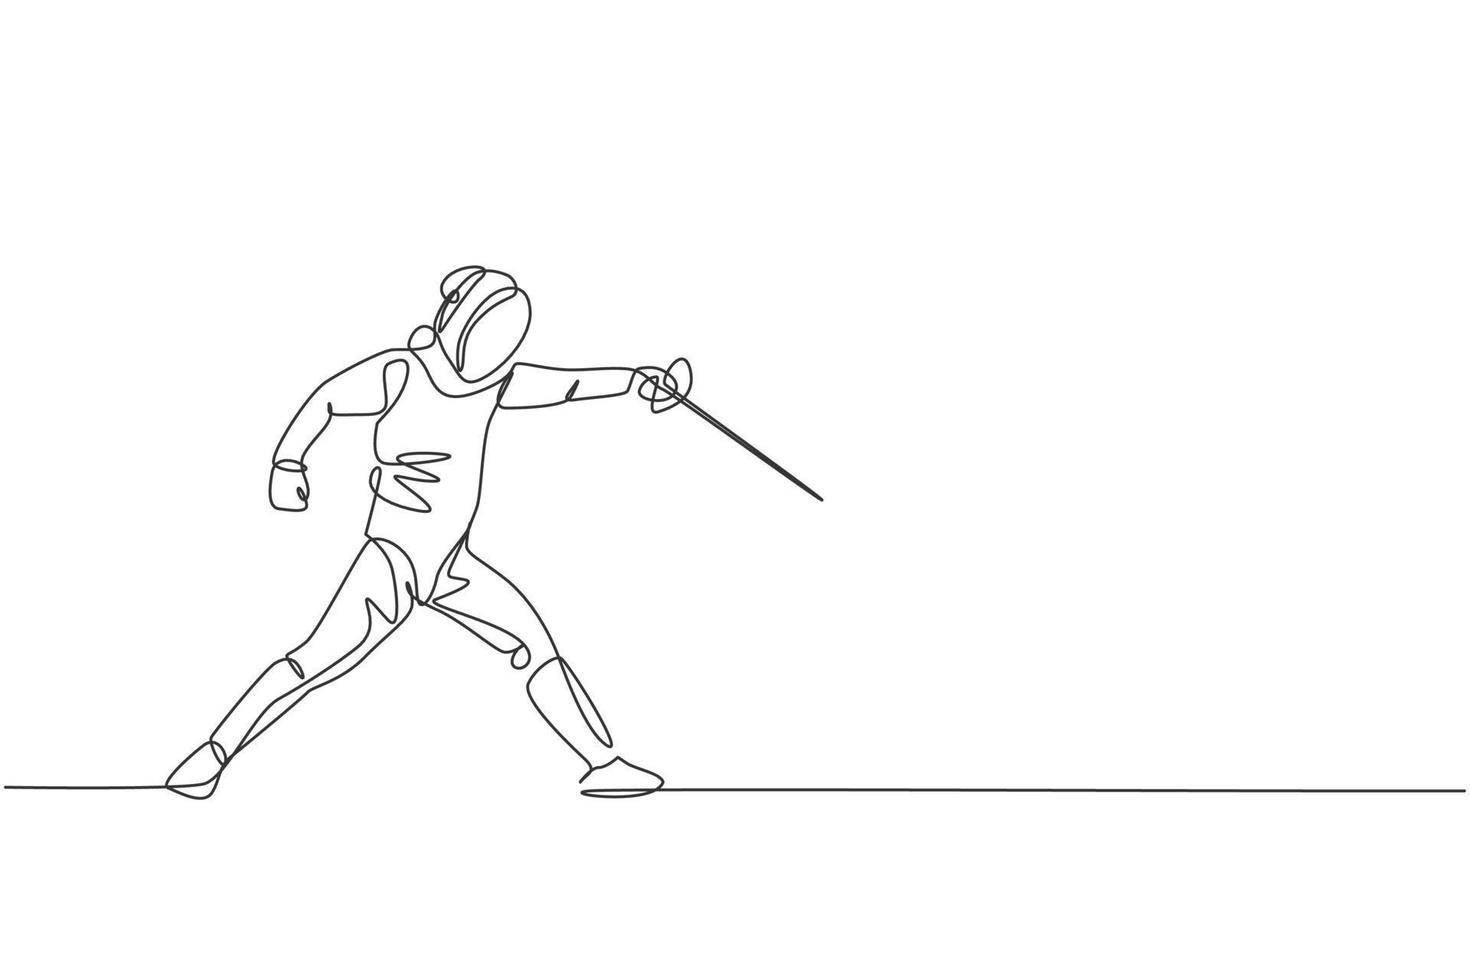 um desenho de linha contínua de jovem esgrima atleta prática lutando na arena de esporte profissional. fantasia de esgrima e segurando o conceito de espada. ilustração em vetor design de desenho de linha única dinâmica